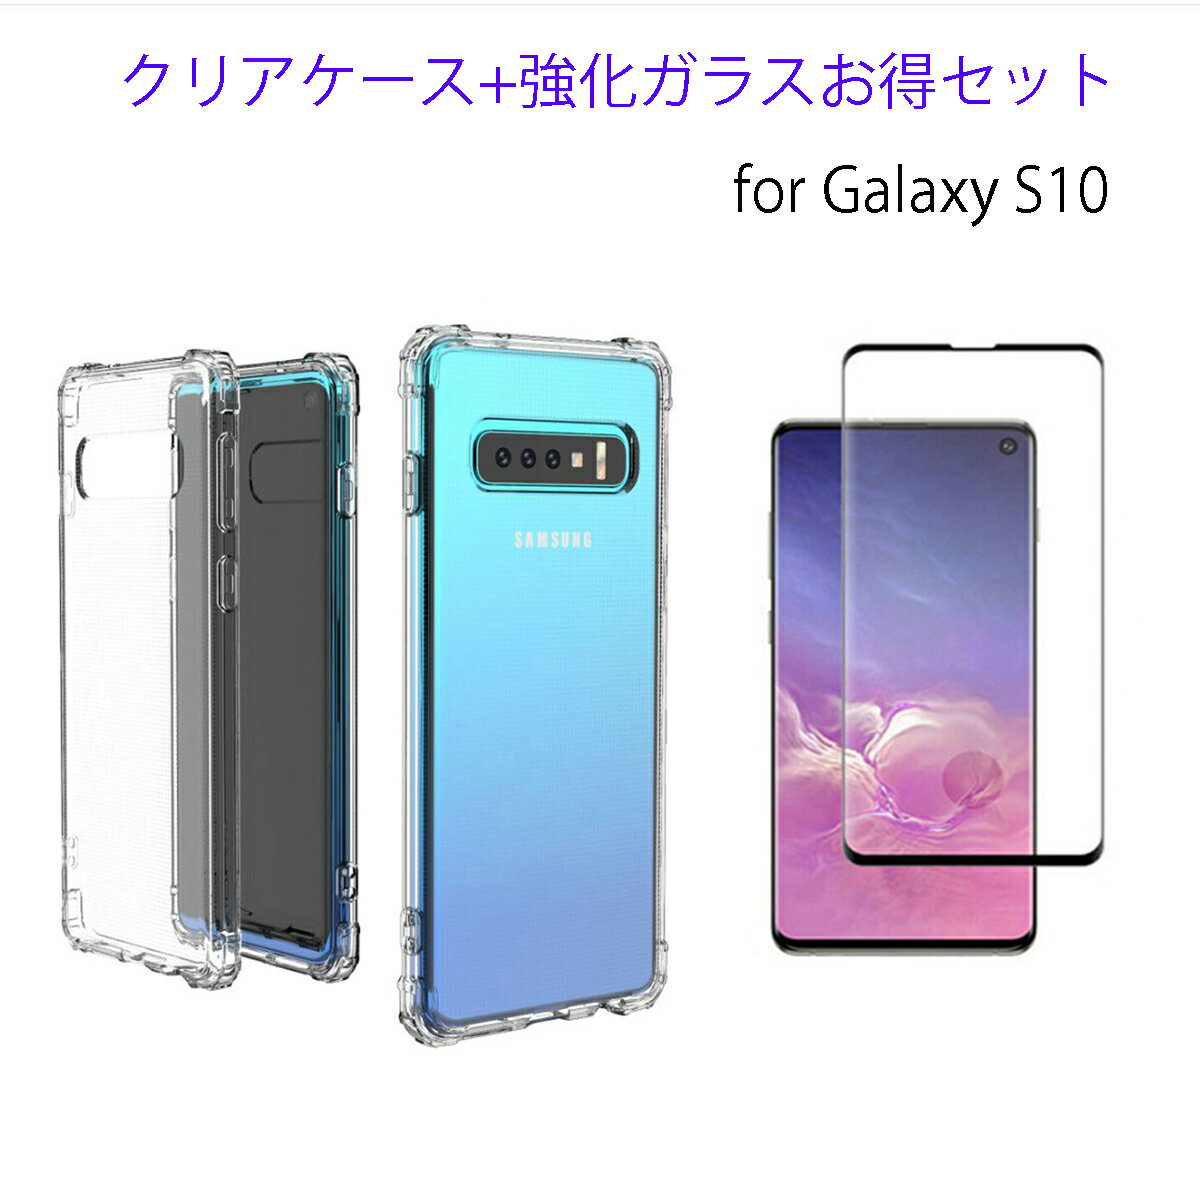 Galaxy S10 ケース 強化ガラスフィルム付き Galaxy S10 Plus ケース ( 透明 / 衝撃吸収 / 背面マイクロドット加工 / ストラップホール / ストラップ付 ) GalaxyS10 S10PLUS ギャラクシー S10+ S10プラス フィルム